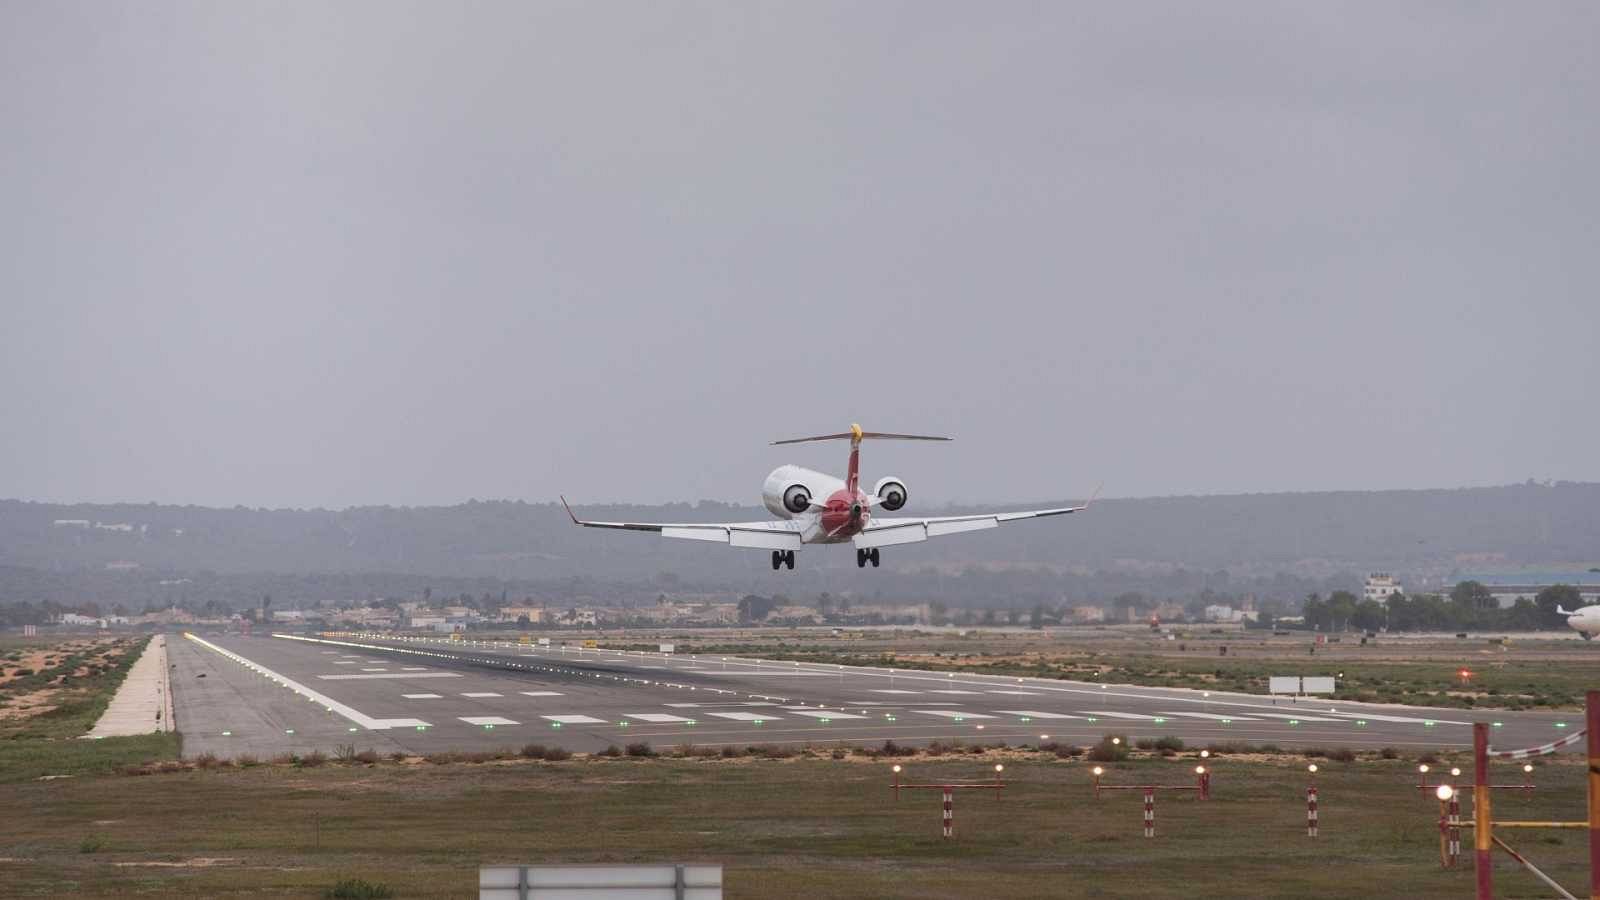 Acusados de sedición los huidos del avión en Palma - RTVE.es